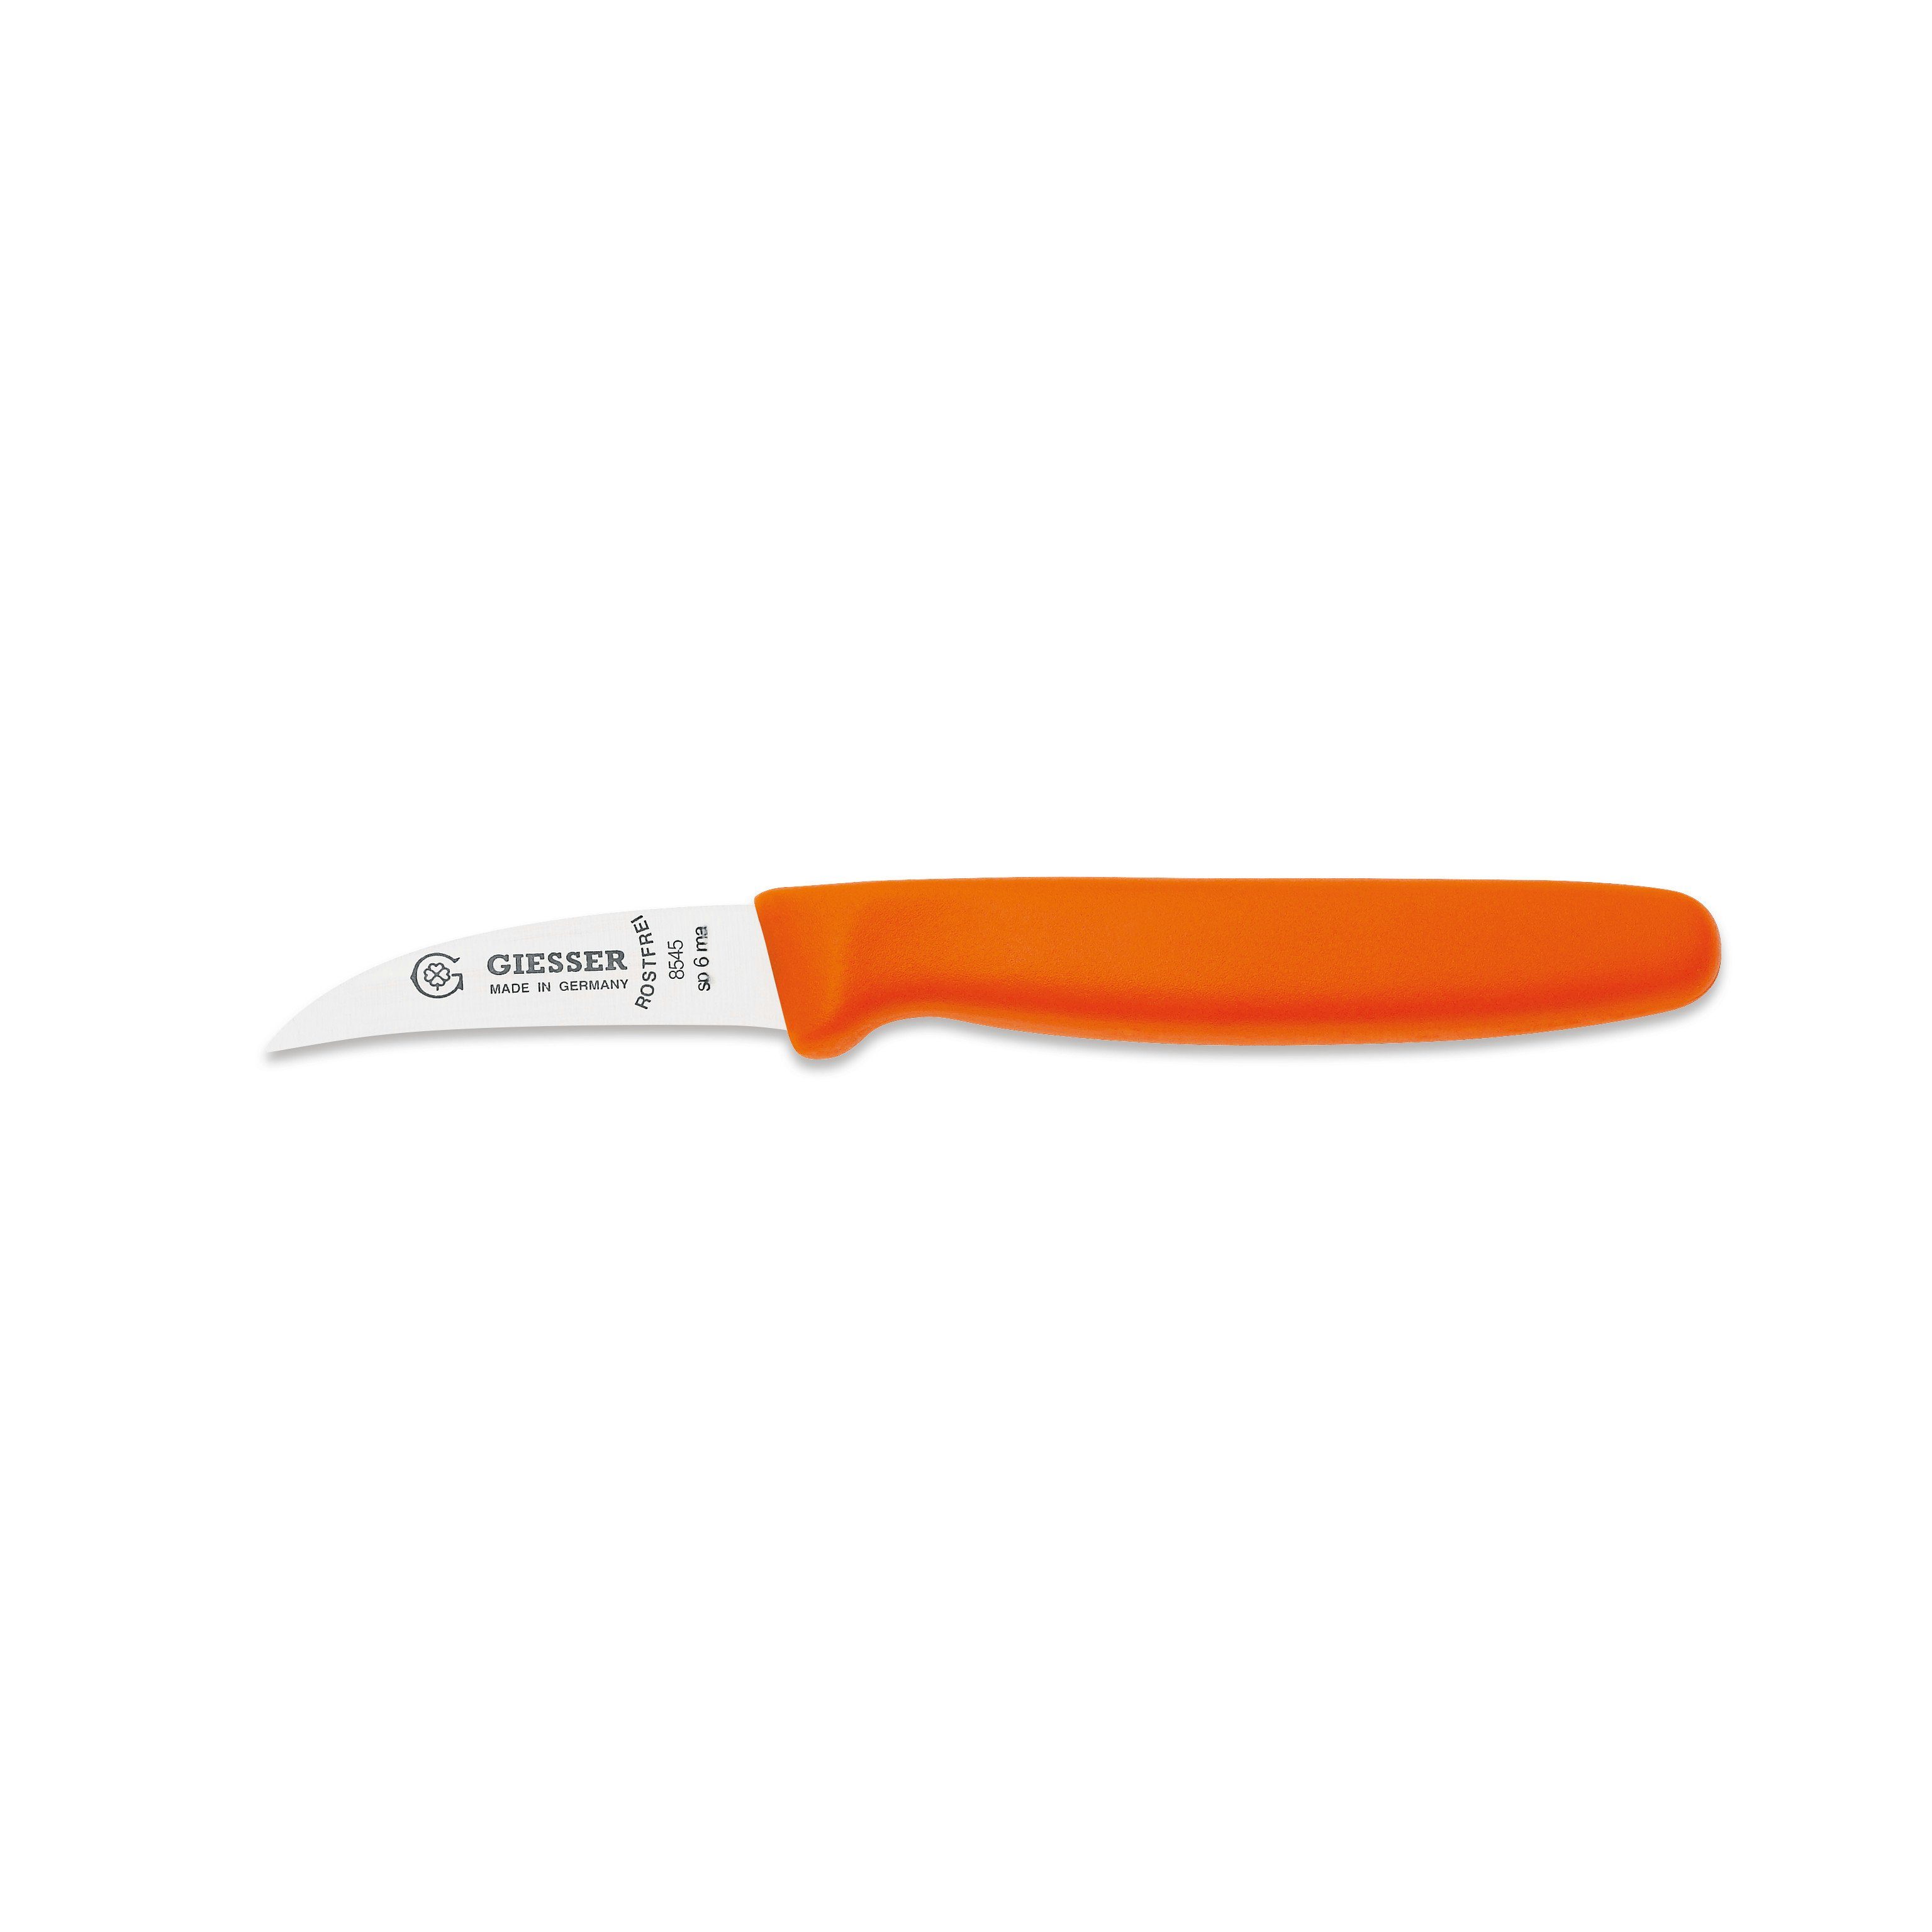 Giesser Messer Schälmesser Gemüsemesser 8545 sp 6, Handabzug, Klinge 6 cm Hohle-Schneide orange